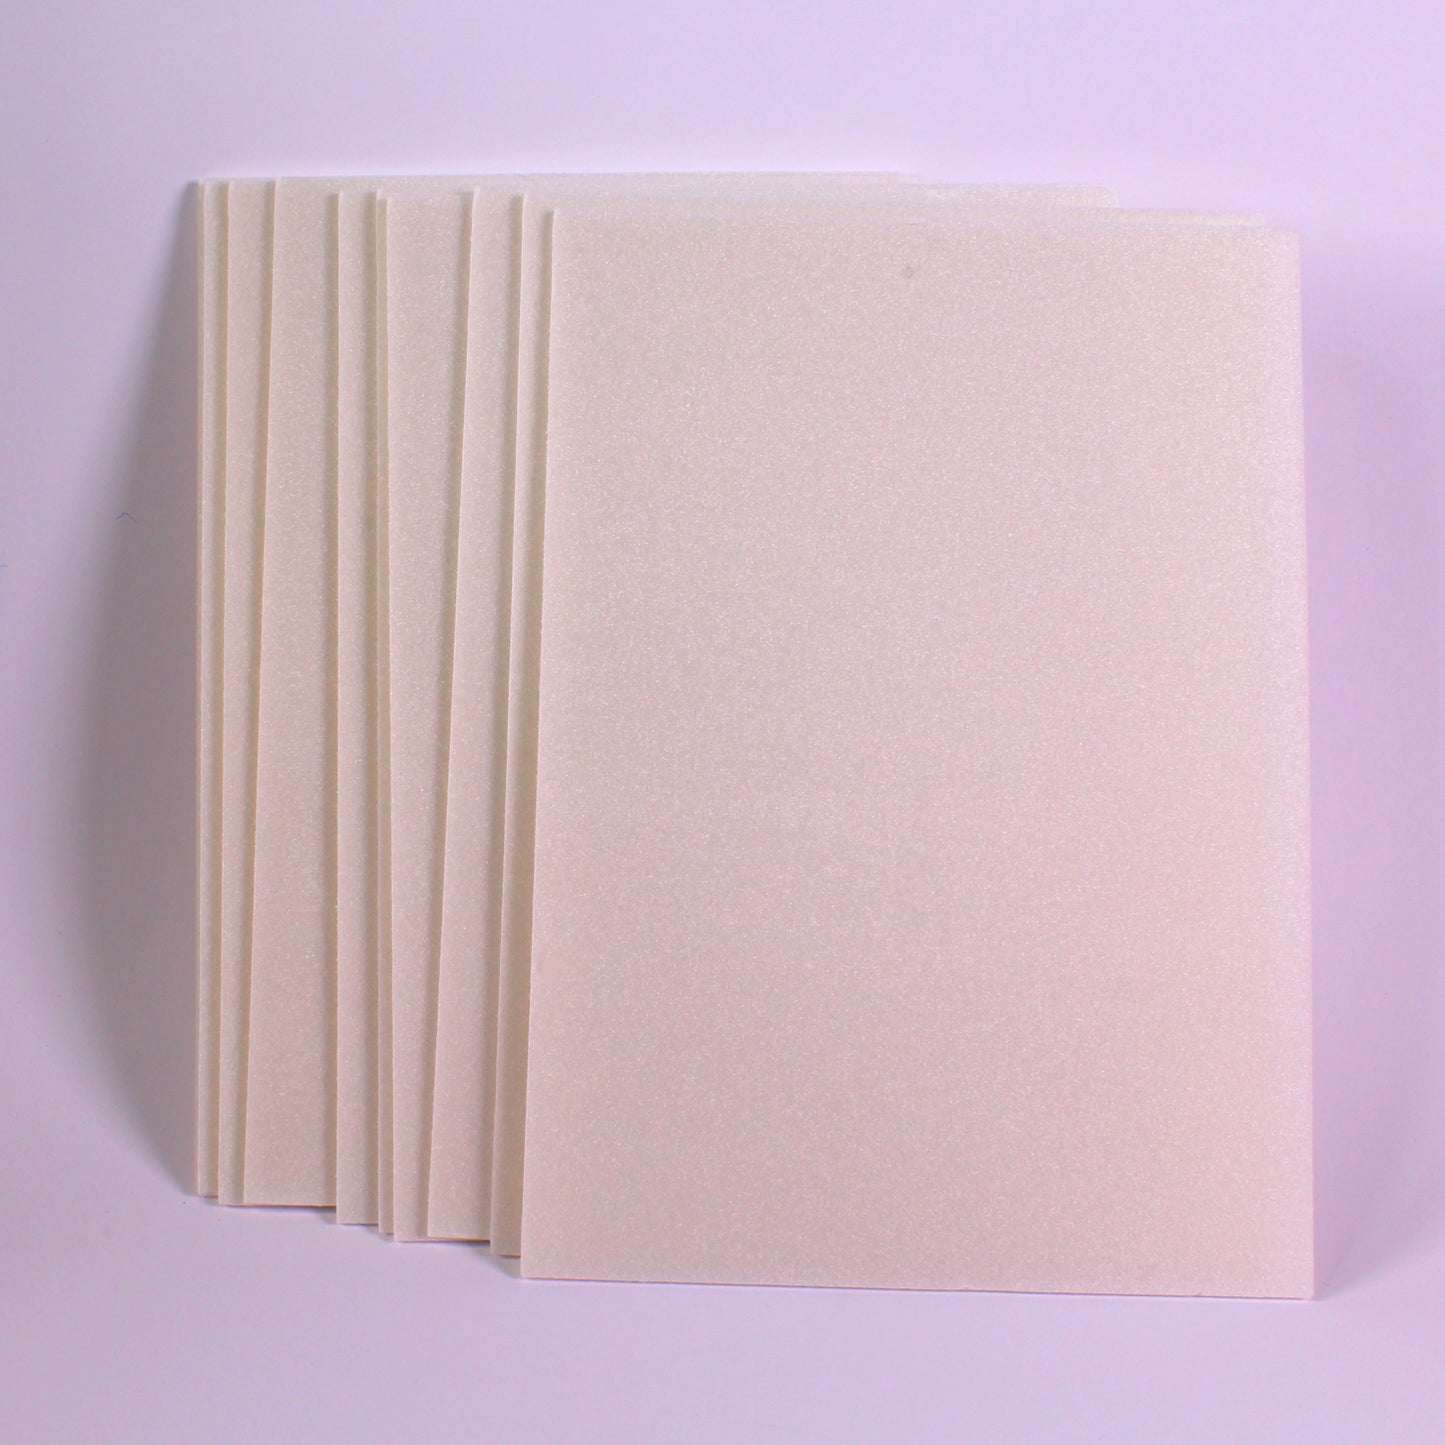 A4 Safeprint Foam Sheets